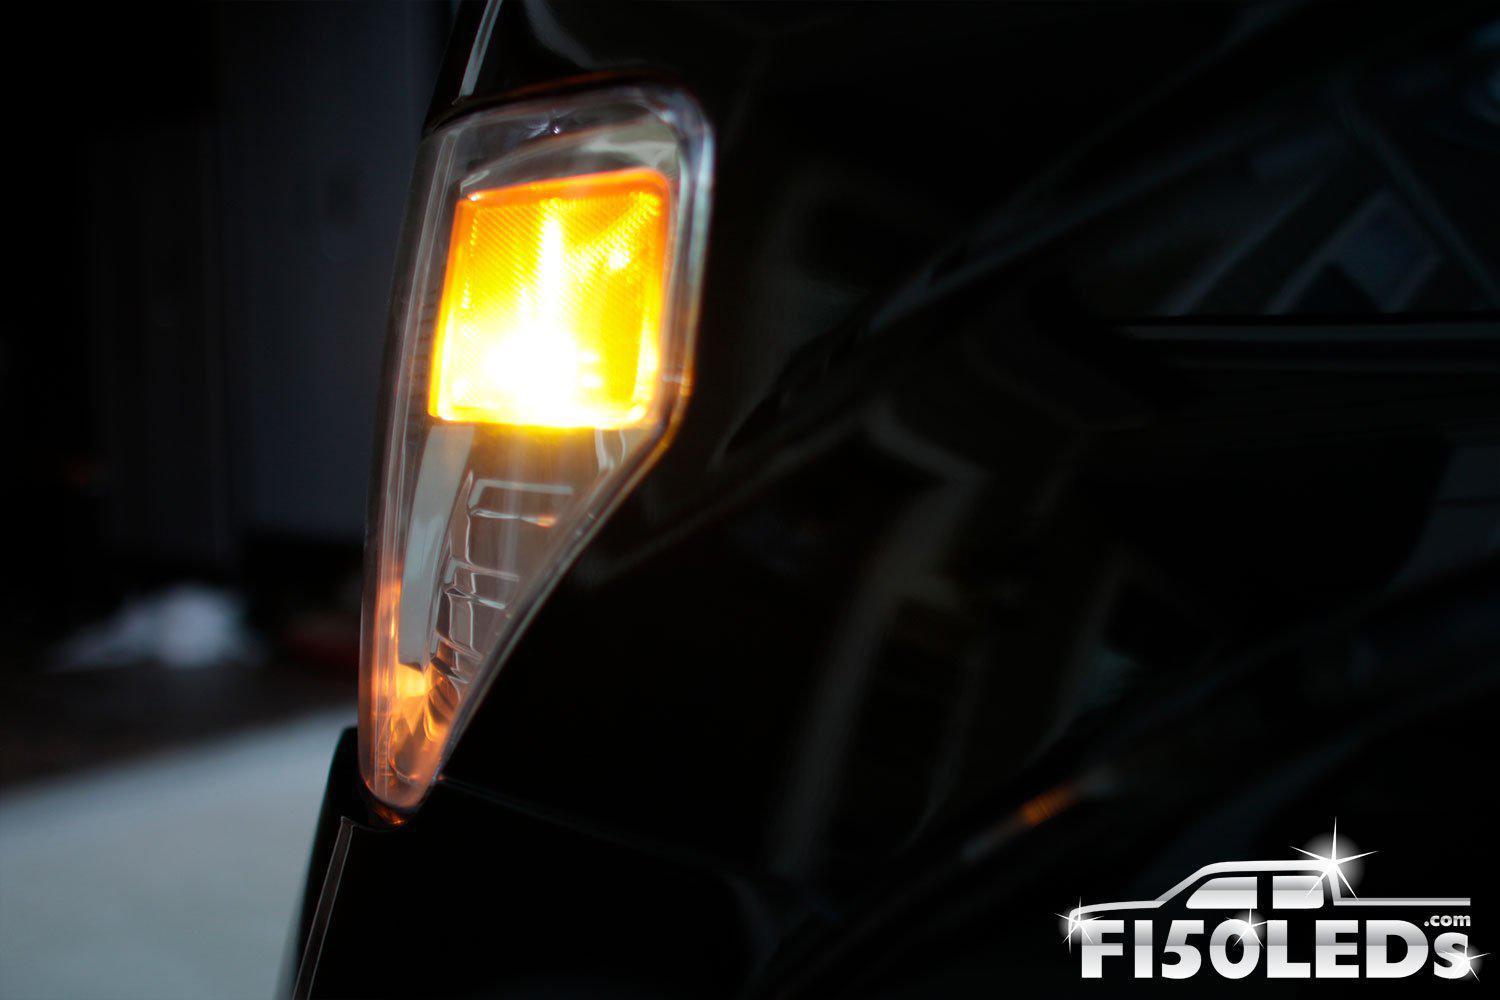 2010-14 F150 RAPTOR FRONT MARKER LED LIGHTS-2010-14 F150 RAPTOR LEDS-F150LEDs.com